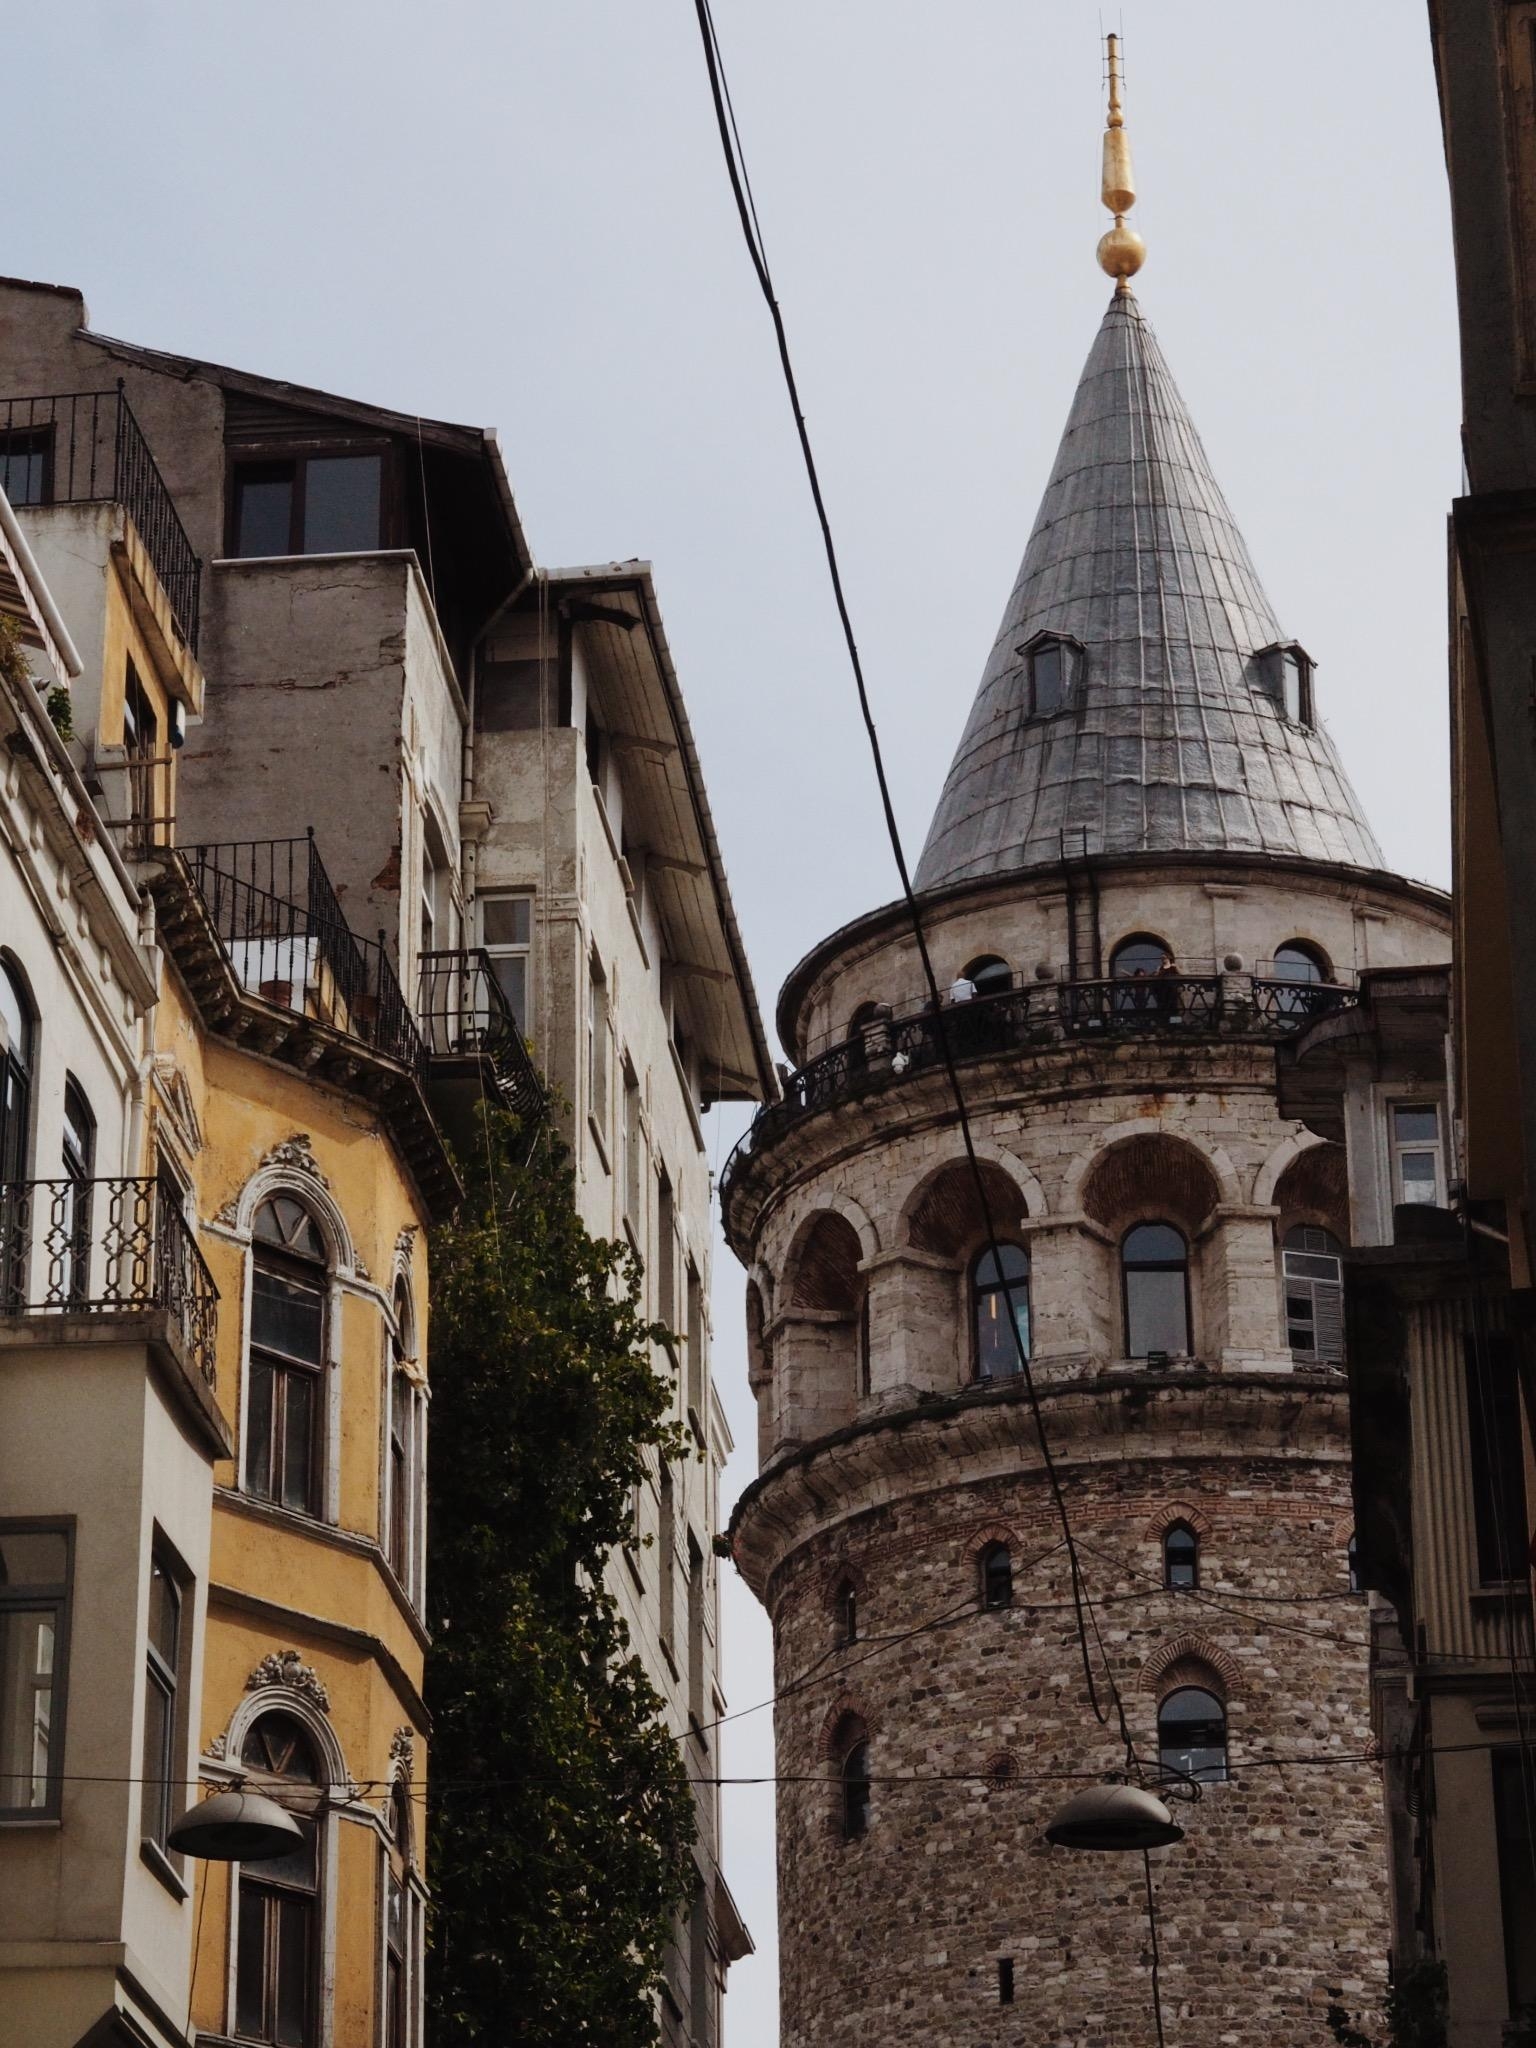 ... auch in Istanbul, vor knapp einem Jahr. 🌞
#travelchallenge #städtetrip 